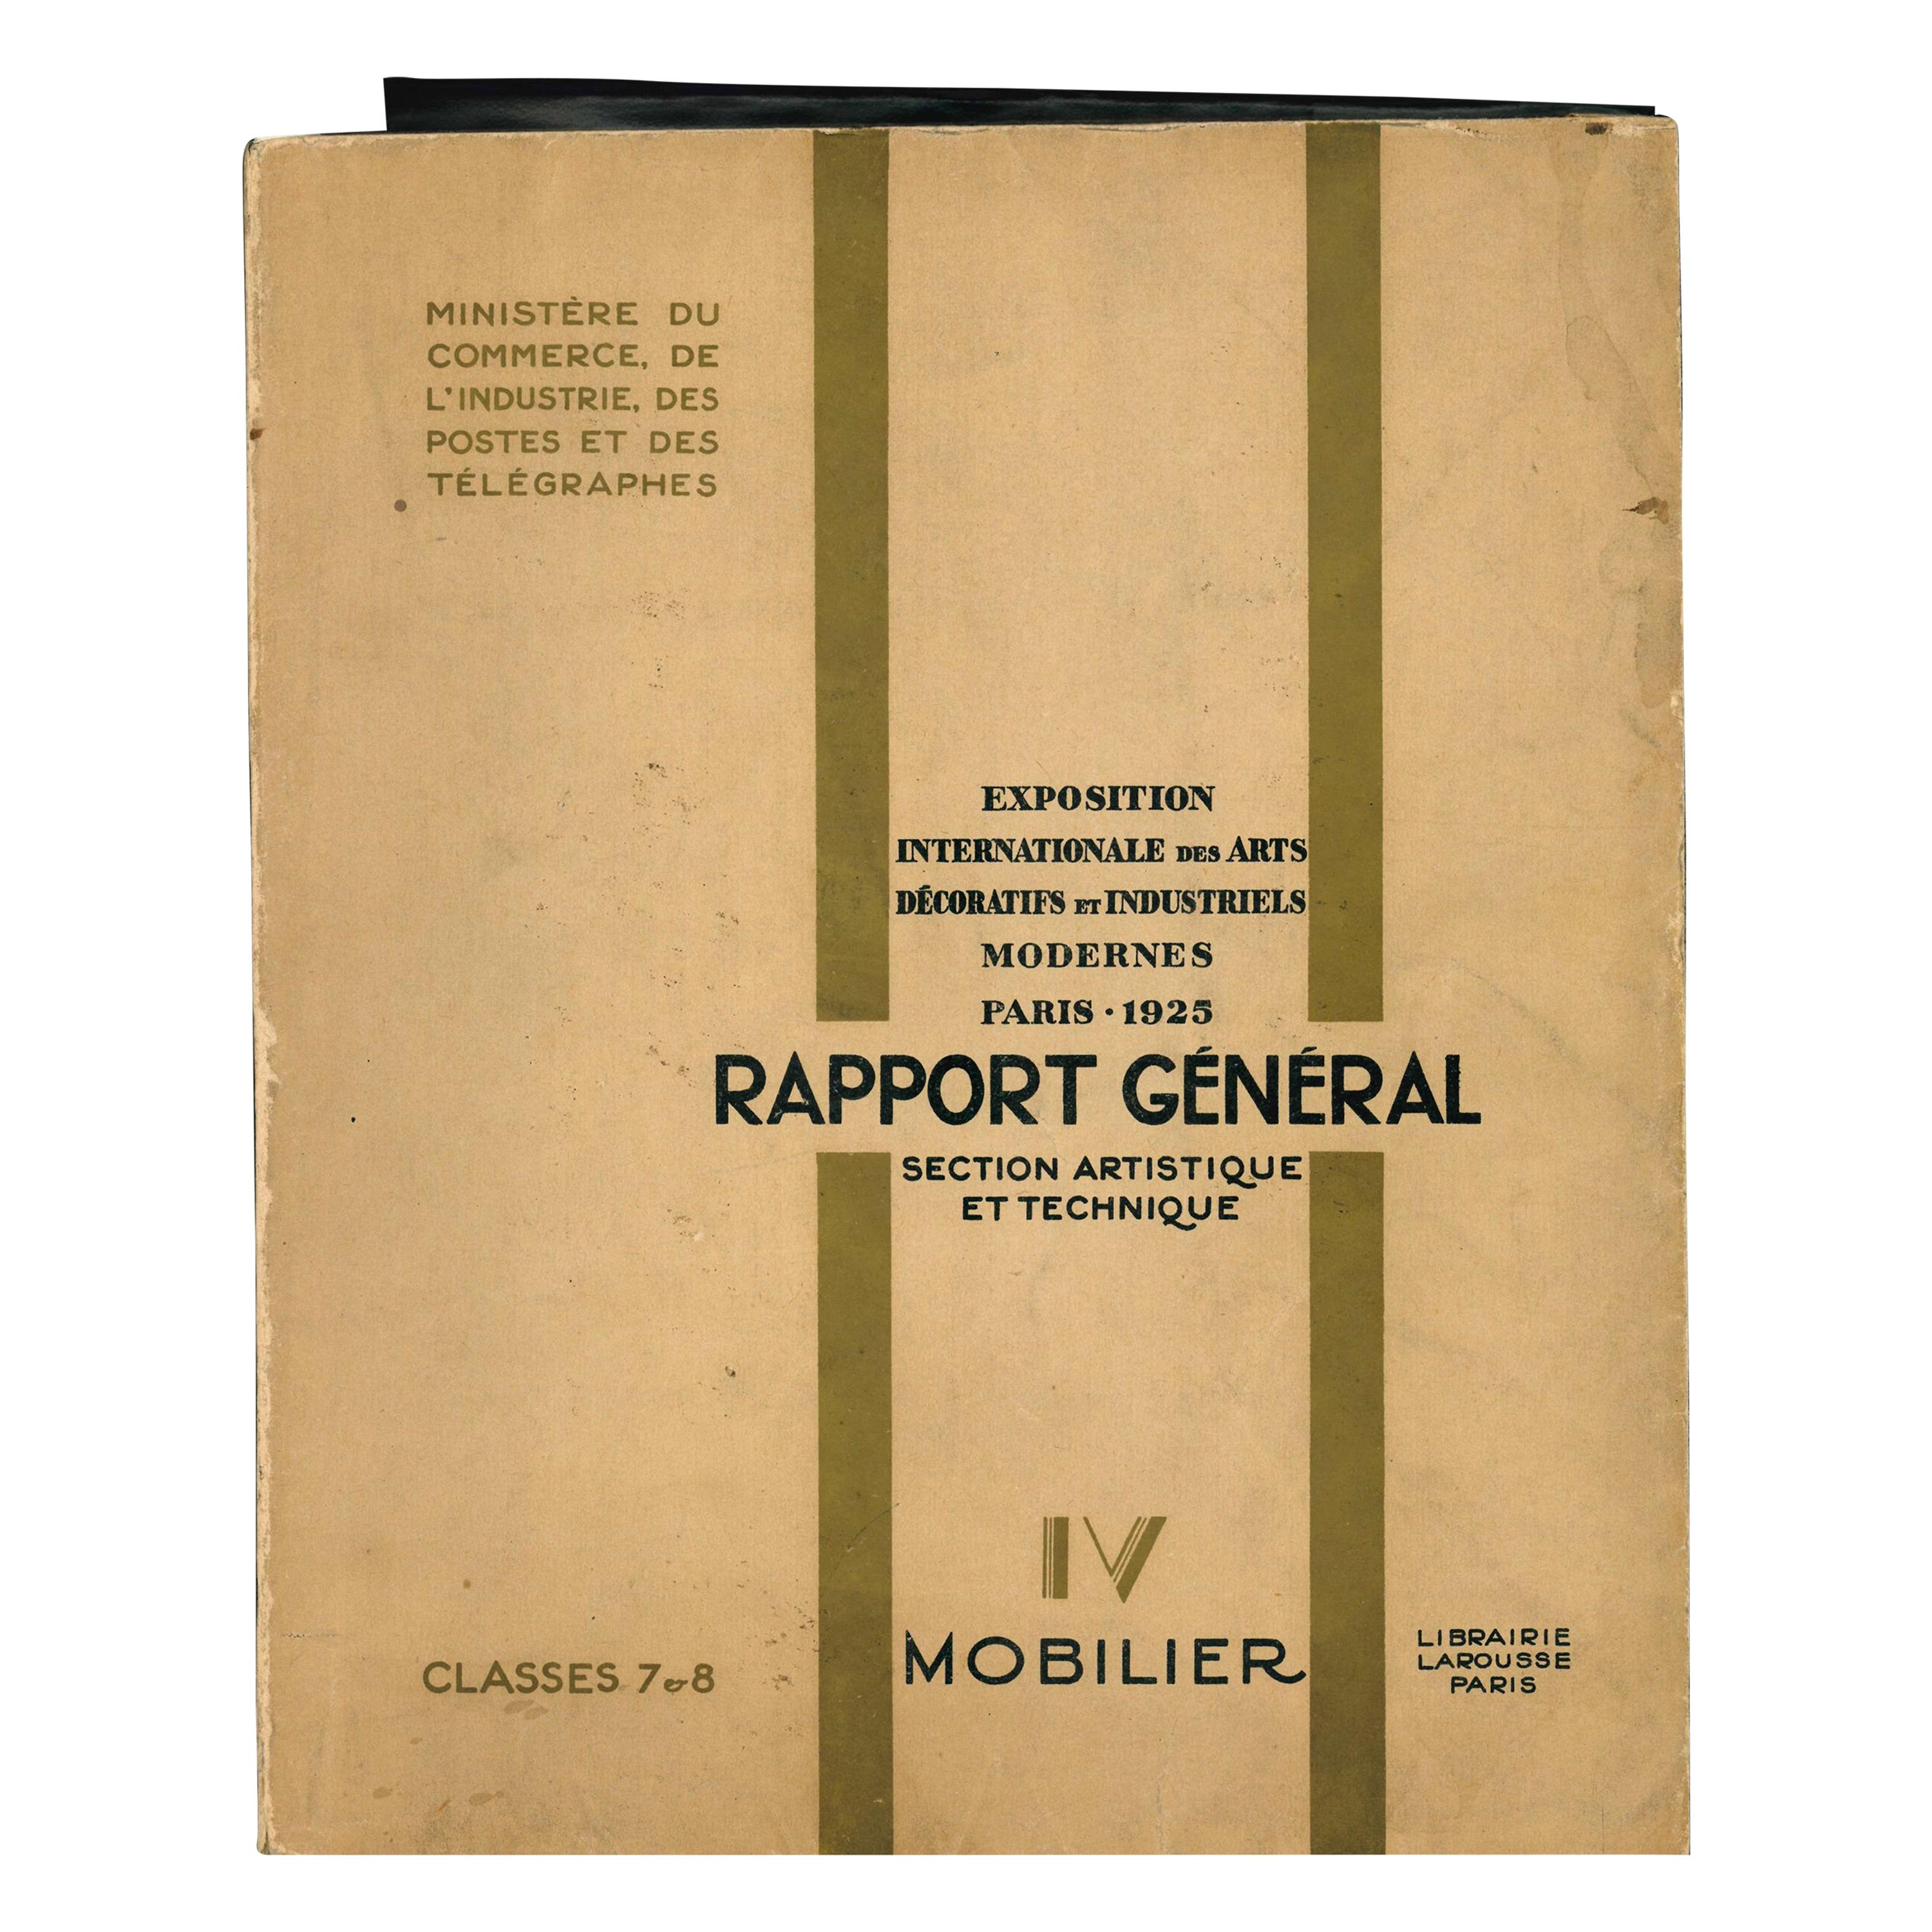 Rapport General, Section Artistique et Technique Paris 1925, IV Mobilier 